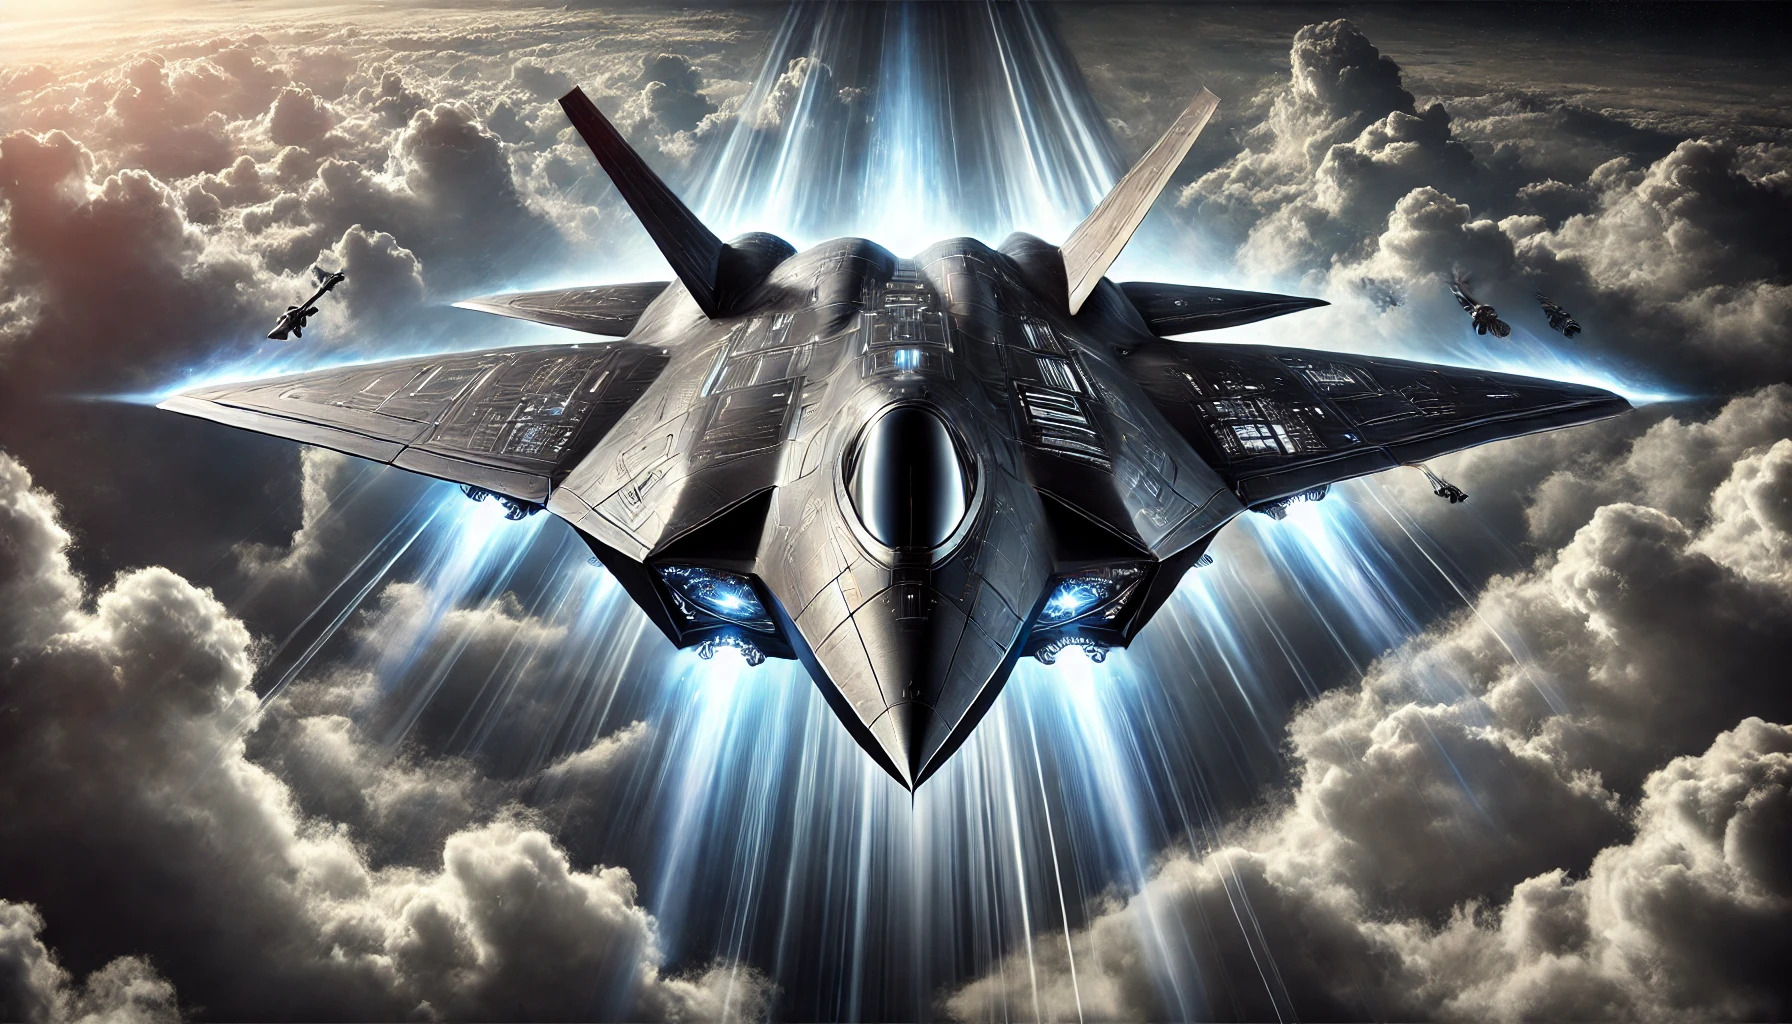 
                                 El avión de combate más avanzado del mundo, unió a 3 países para su desarrollo y comenzará a funcionar en 2035 
                            